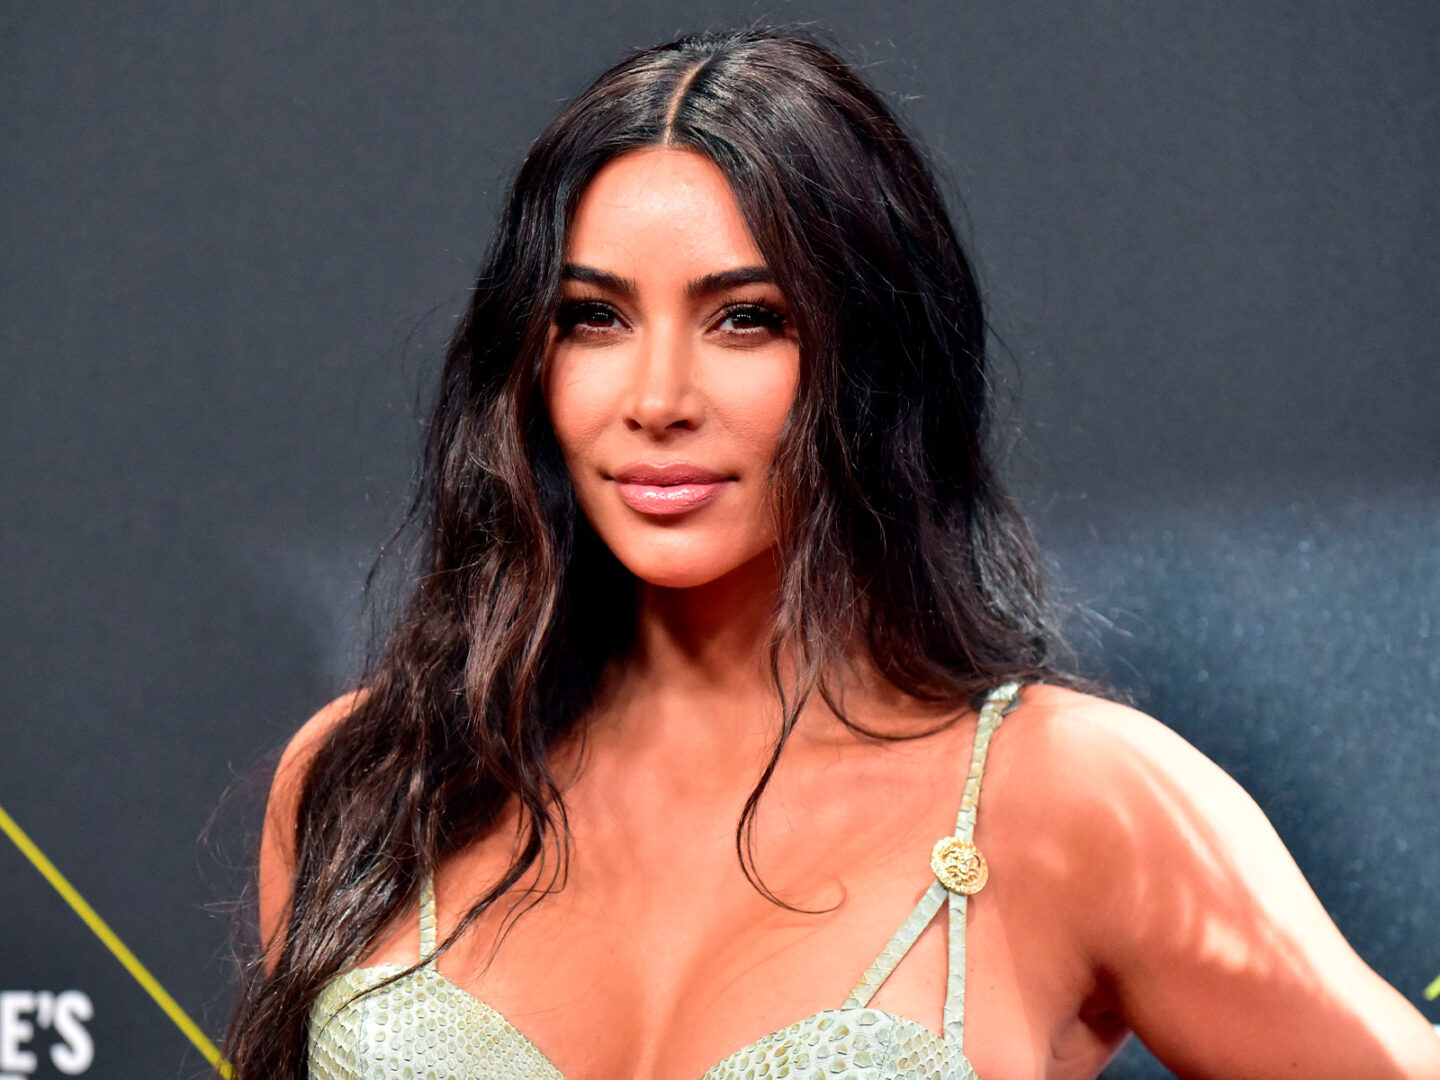 Kim Kardashian to star in new female lawyer series